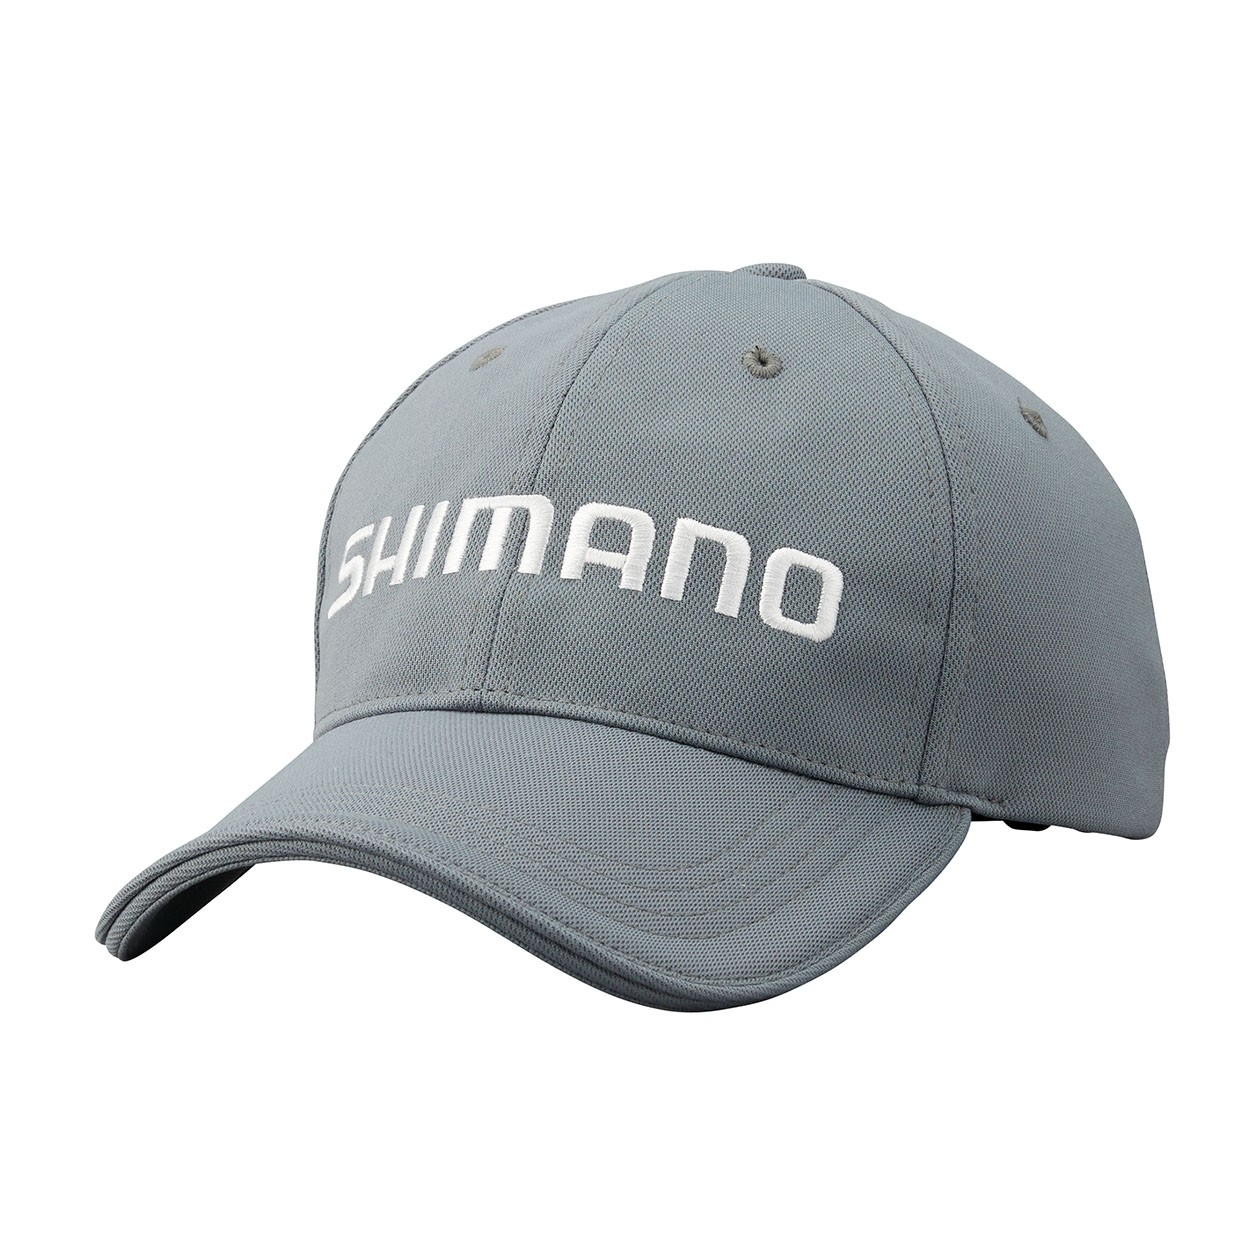 Cappellino Shimano Standard Cap